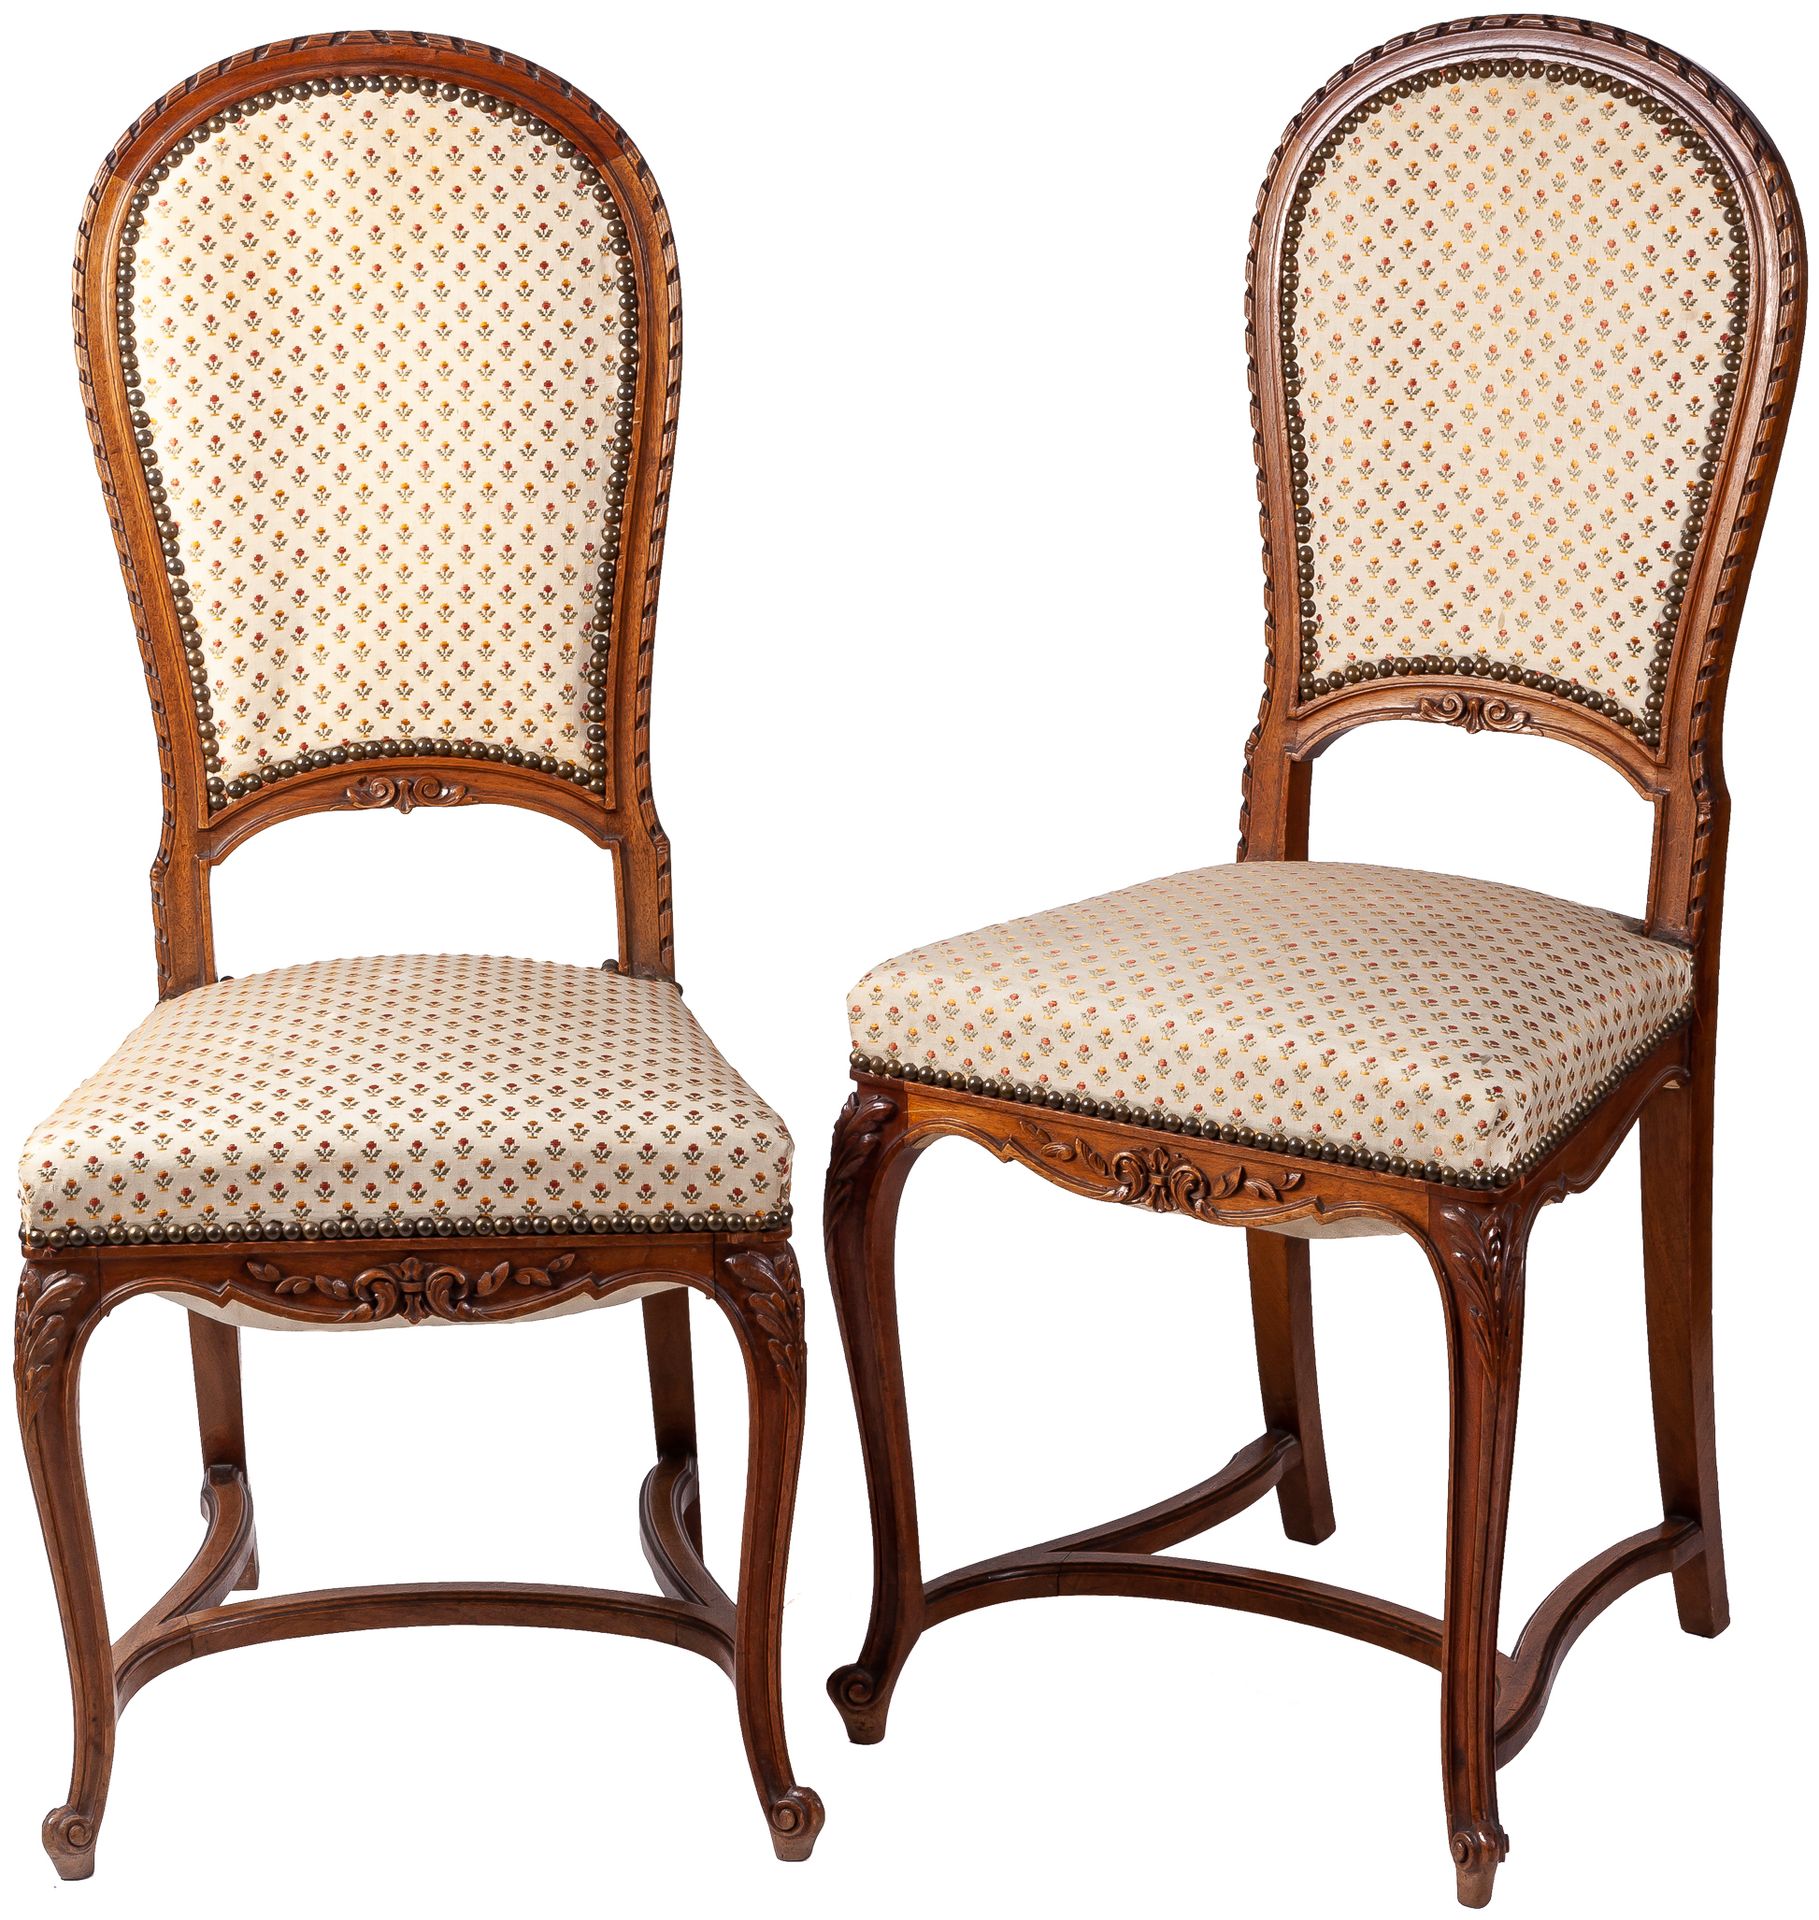 Null Paire de chaises de style Louis XV / Louis XVI Transitionnel. 20ème siècle
&hellip;